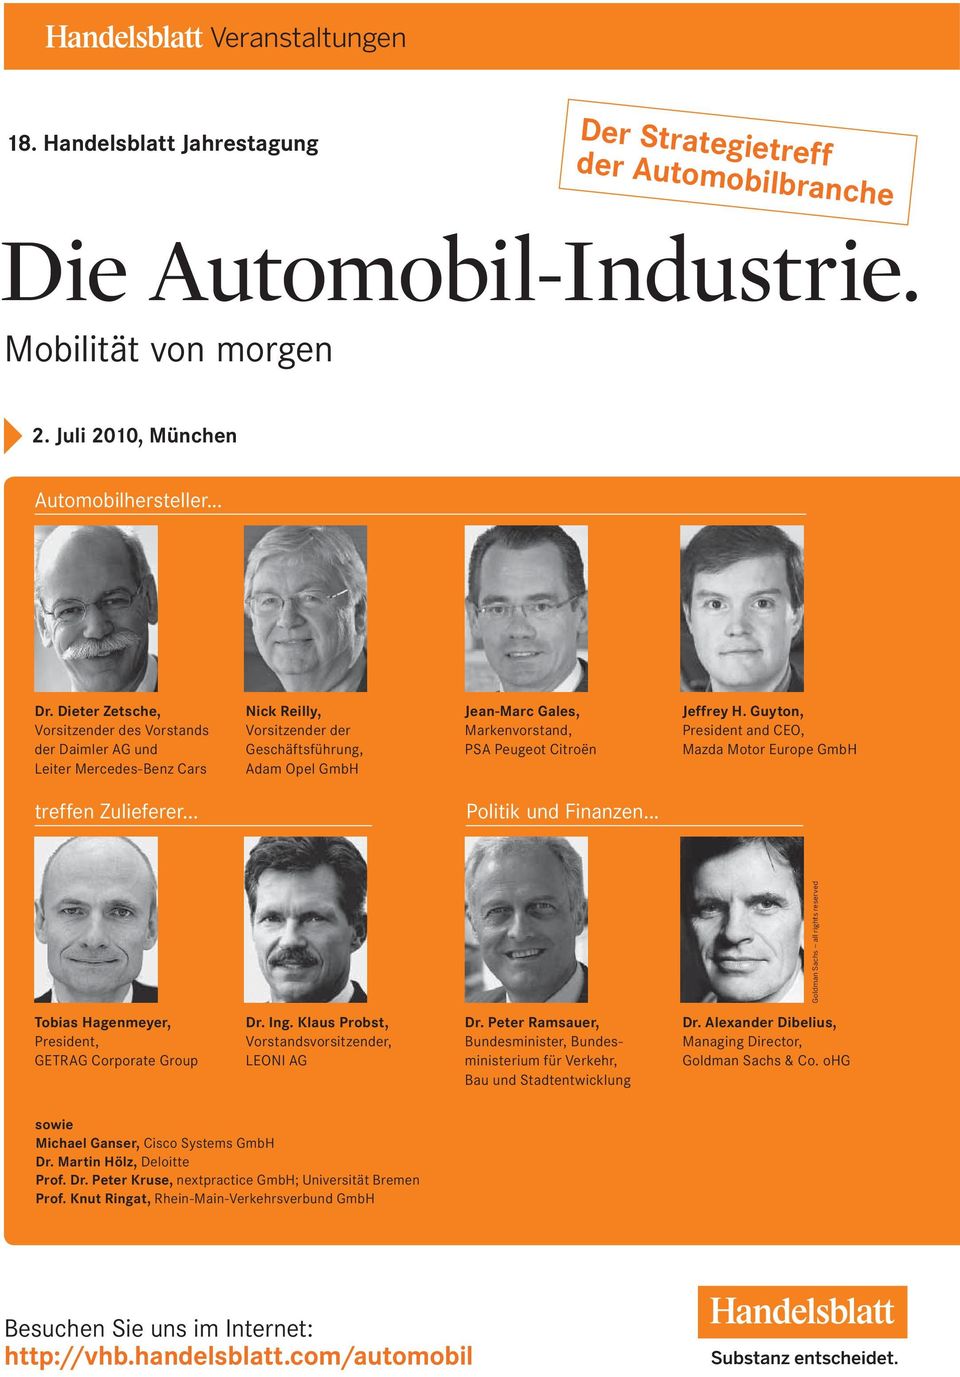 Citroën Jeffrey H. Guyton, President and CEO, Mazda Motor Europe GmbH treffen Zulieferer... Politik und Finanzen.